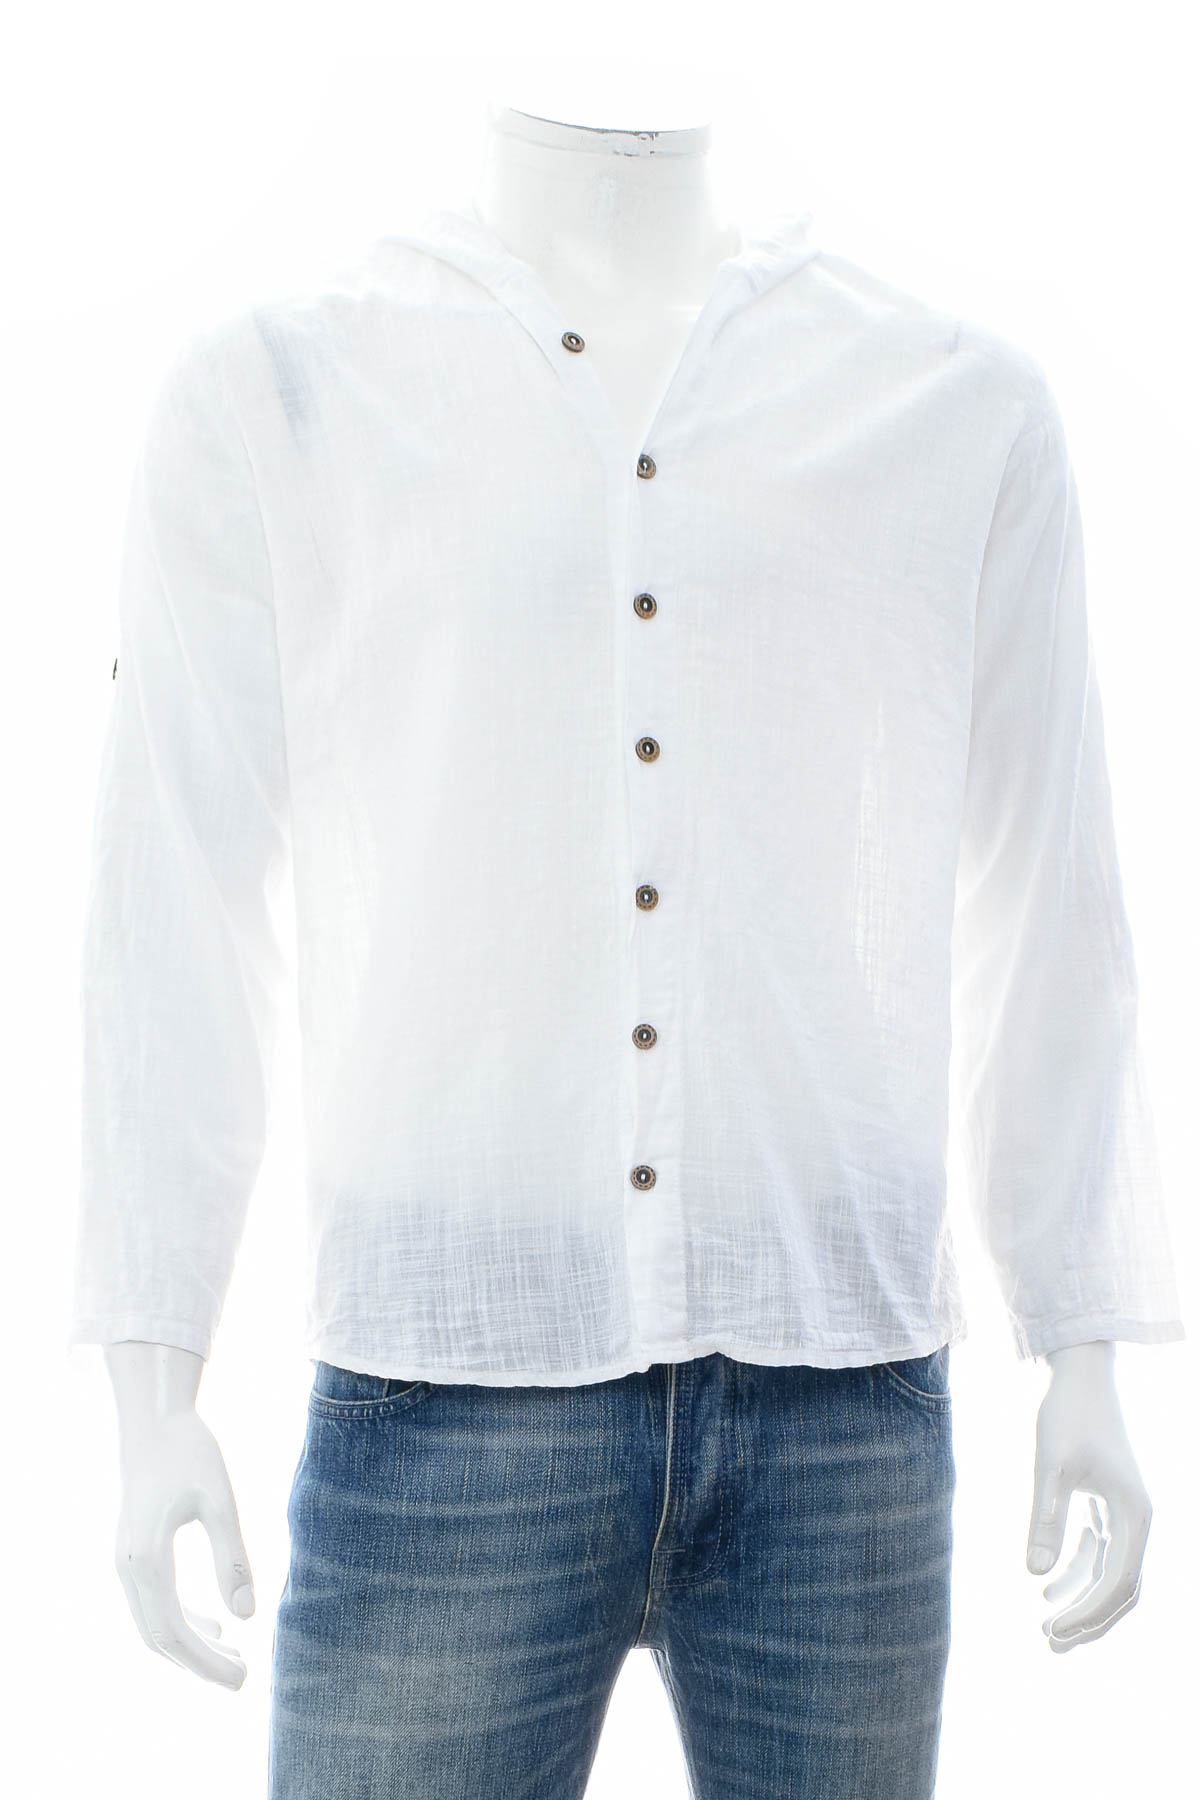 Ανδρικό πουκάμισο - ATB-D Collection - 0